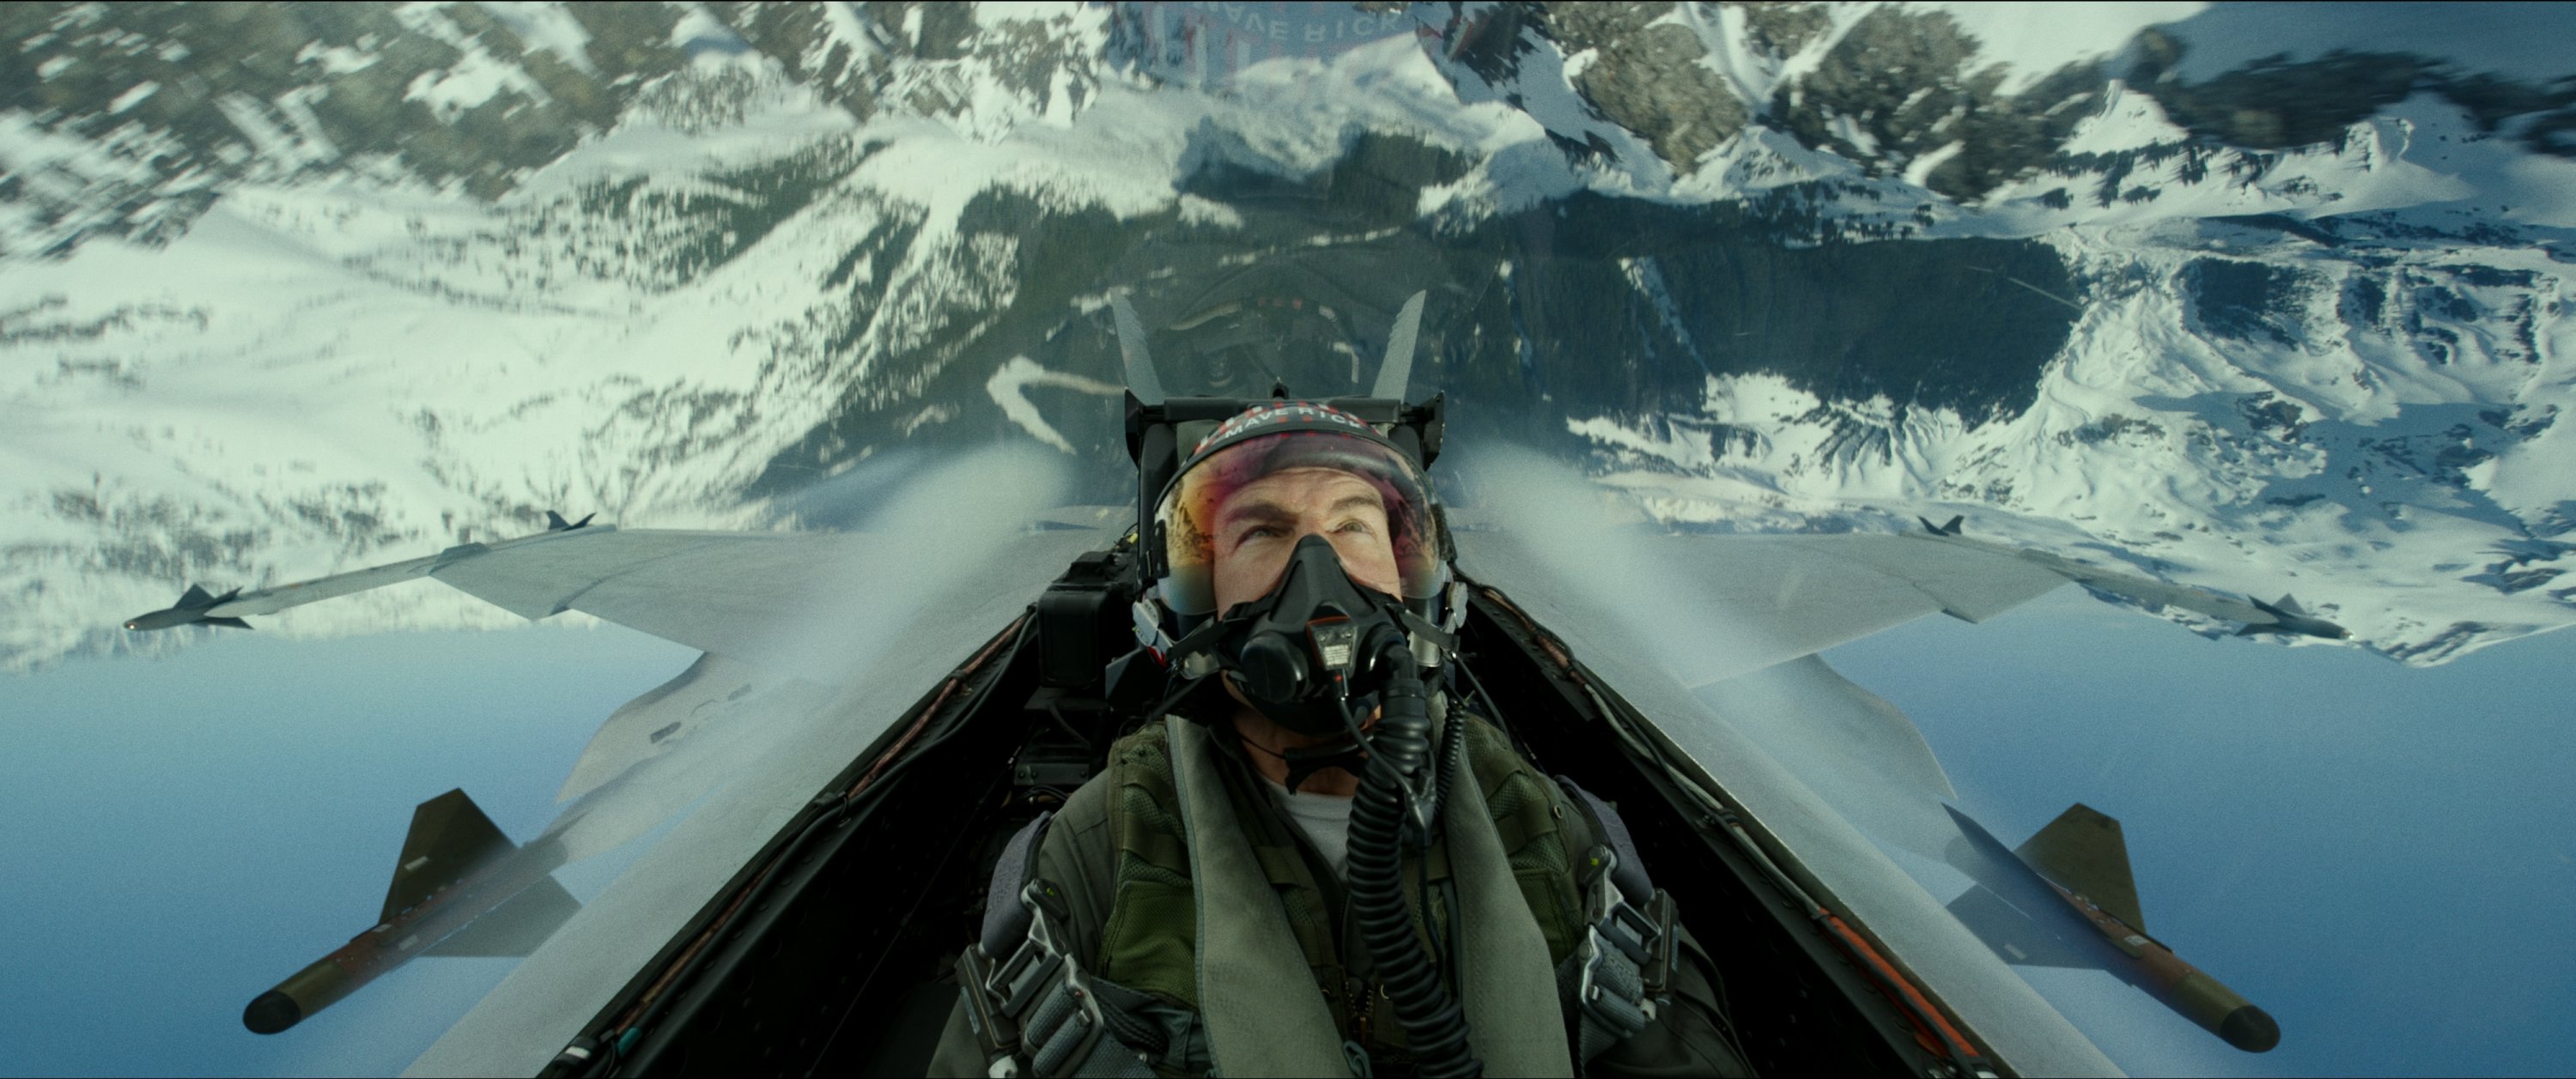 Gambar yang dirilis oleh Paramount Pictures ini menunjukkan Tom Cruise menggambarkan Kapten Pete 'Maverick' Mitchell dalam sebuah adegan dari 'Top Gun: Maverick.'  (Foto AP)